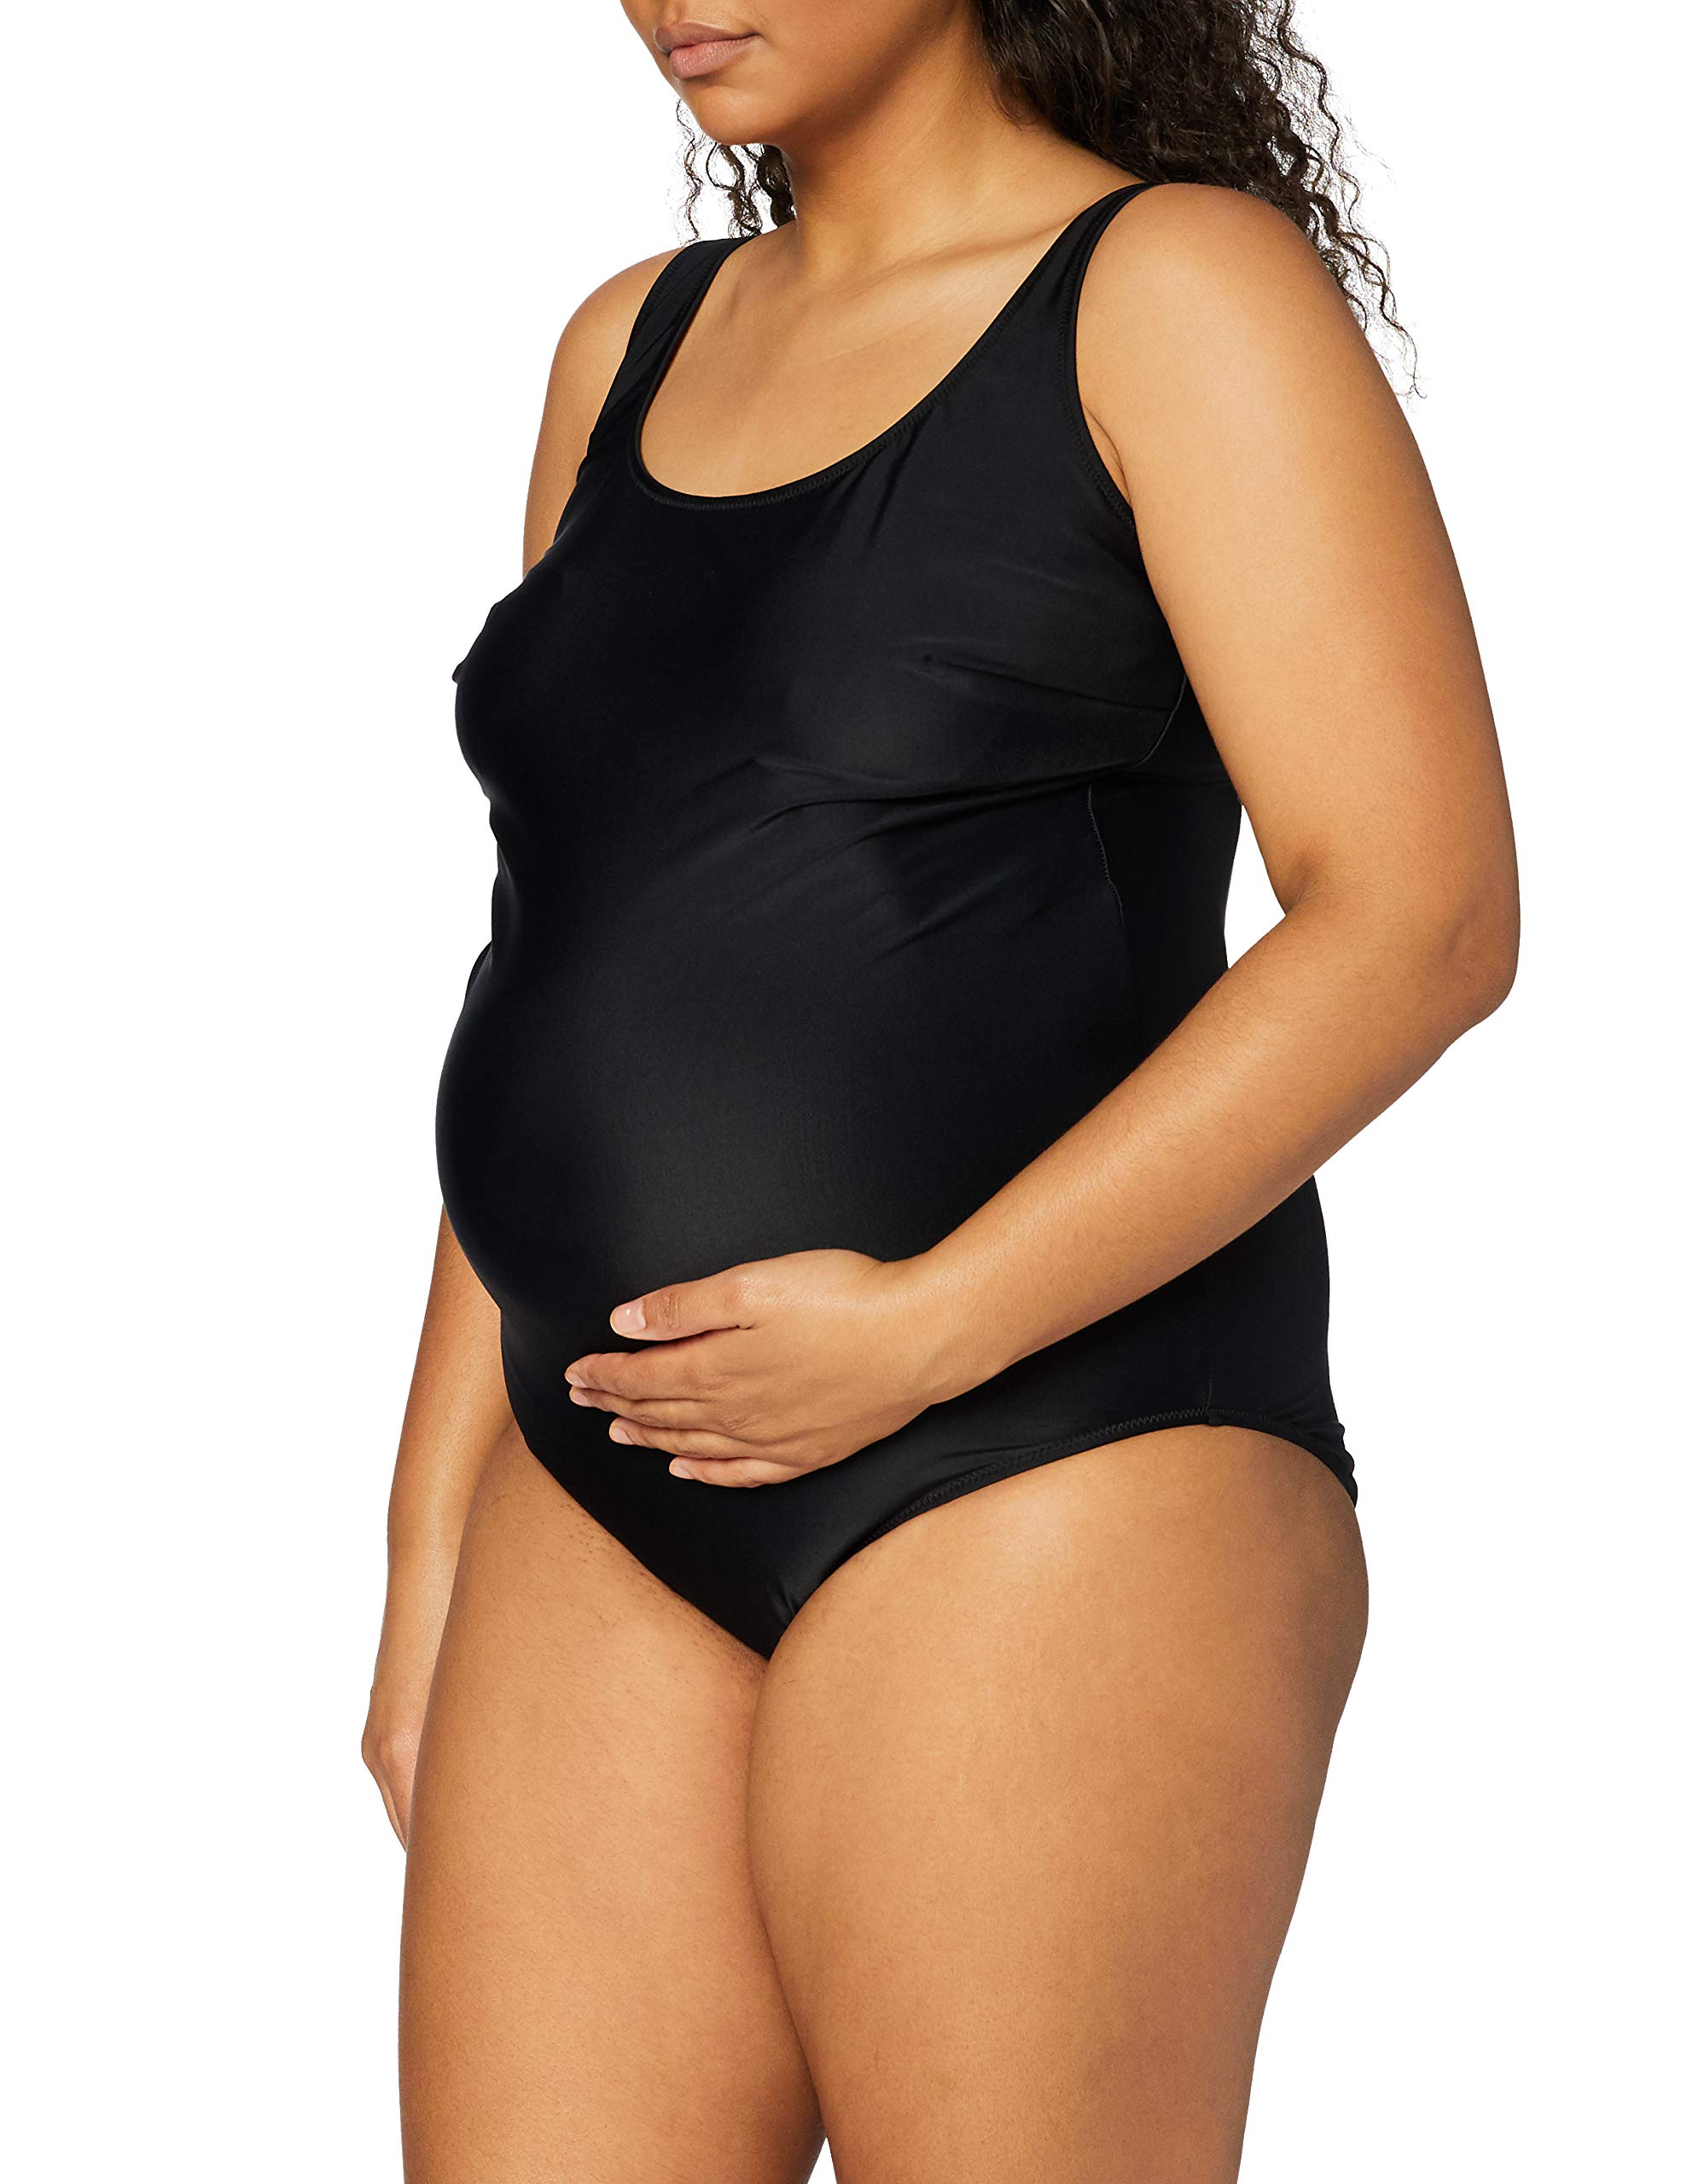 Anita Maternity Damen Badeanzug 9571 Schwangerschafts-Einteiler, Gr. 44 (G), Schwarz (schwarz 001)